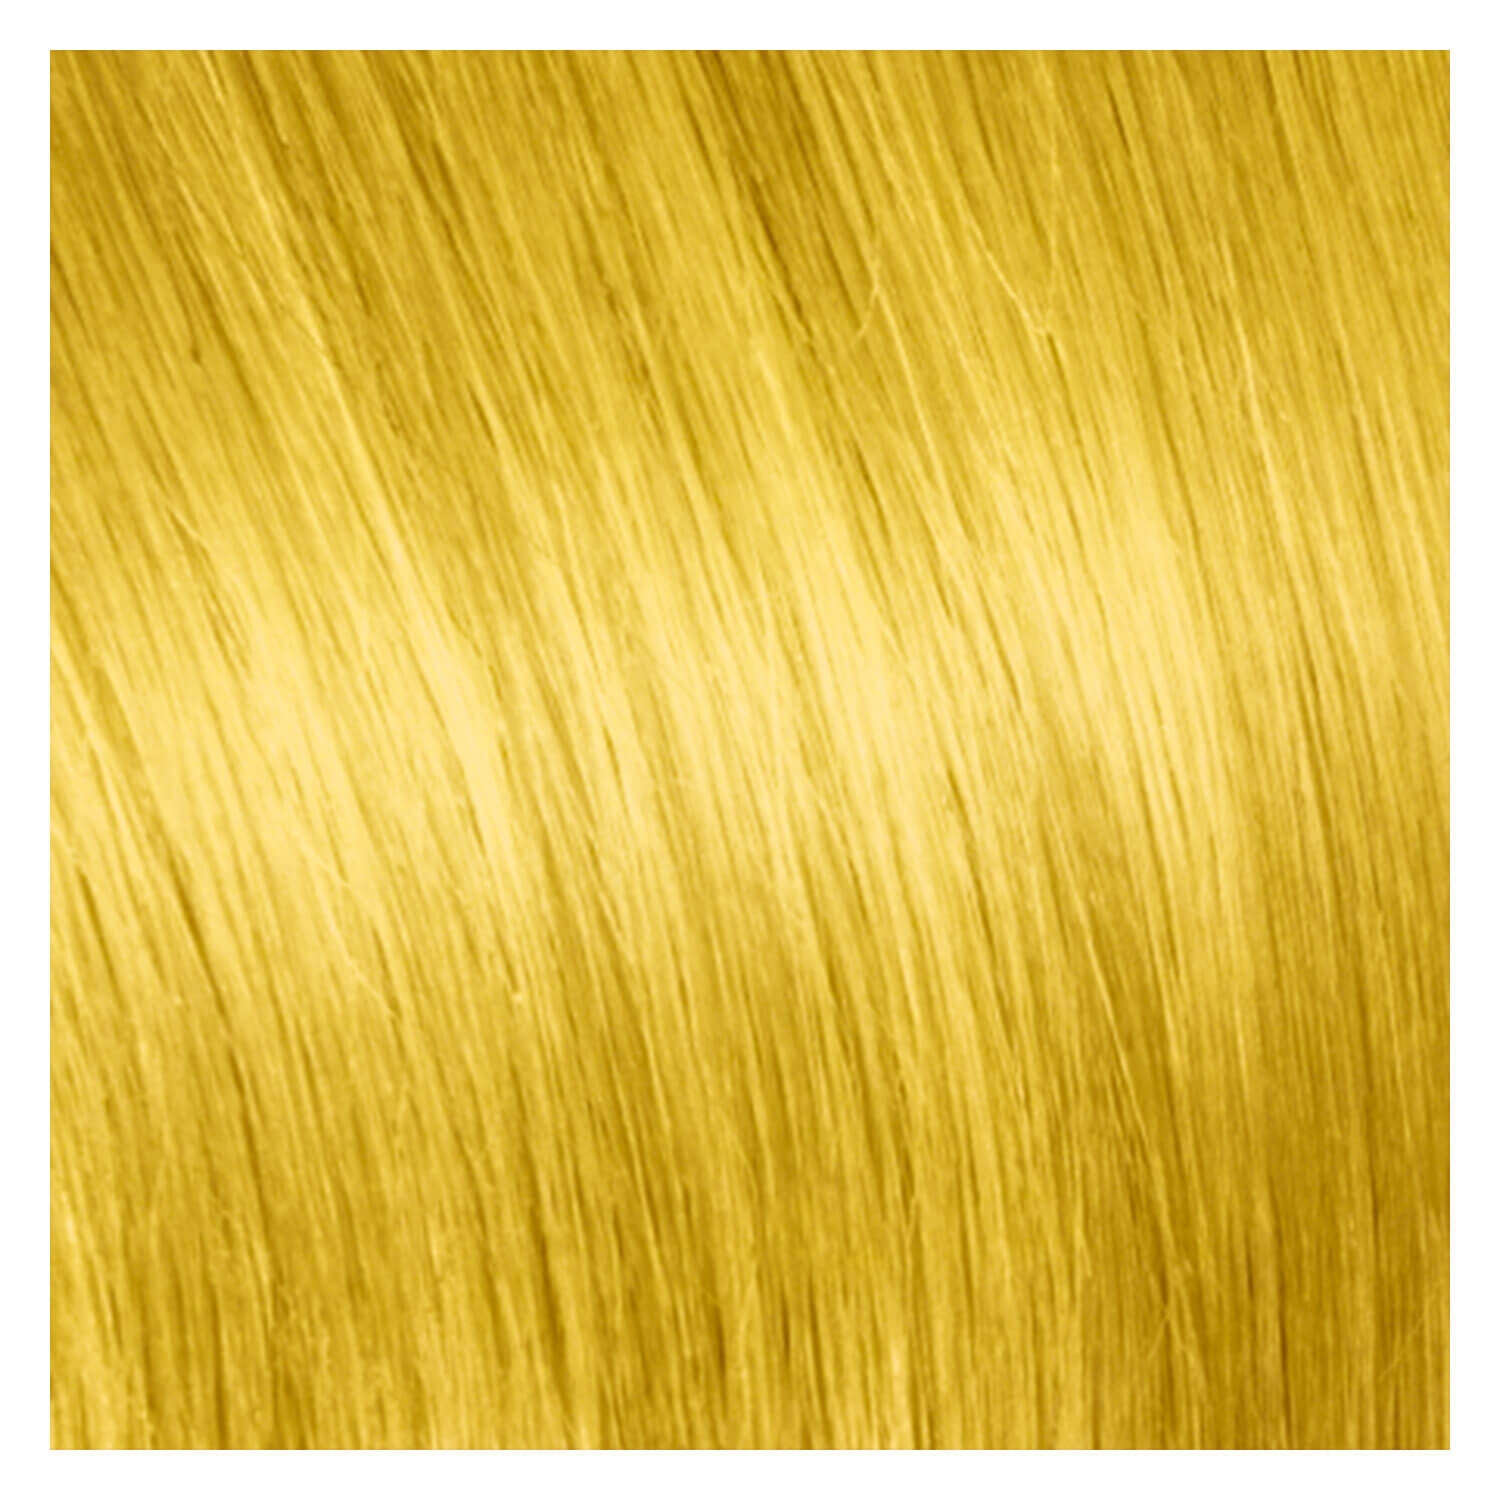 Produktbild von SHE Clip In-System Hair Extensions - Gelb 40cm